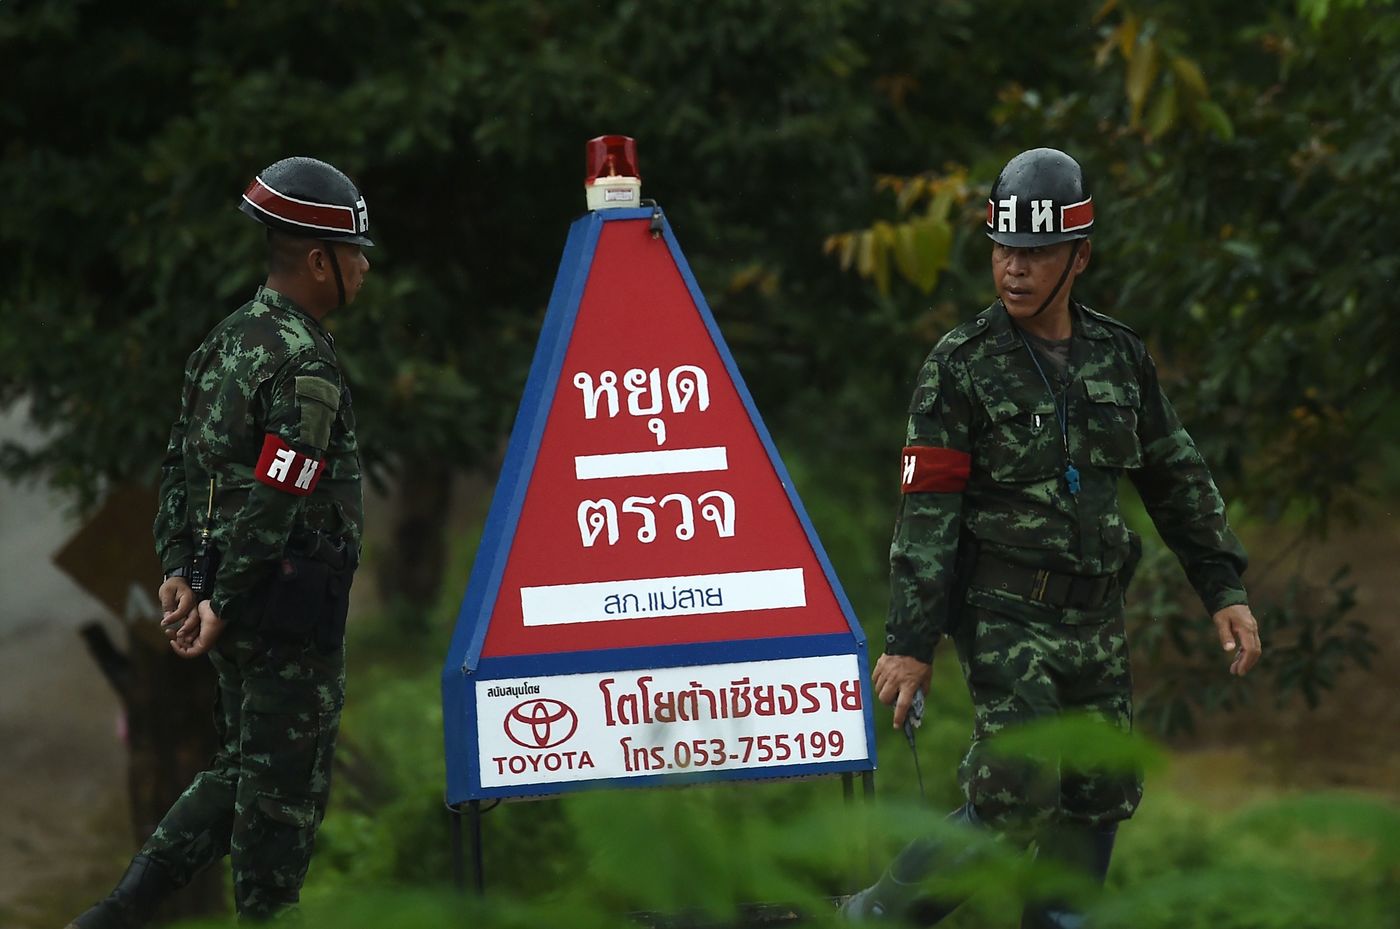 Thailandia, al via la terza missione per salvare gli ultimi 4 ragazzini e l'allenatore